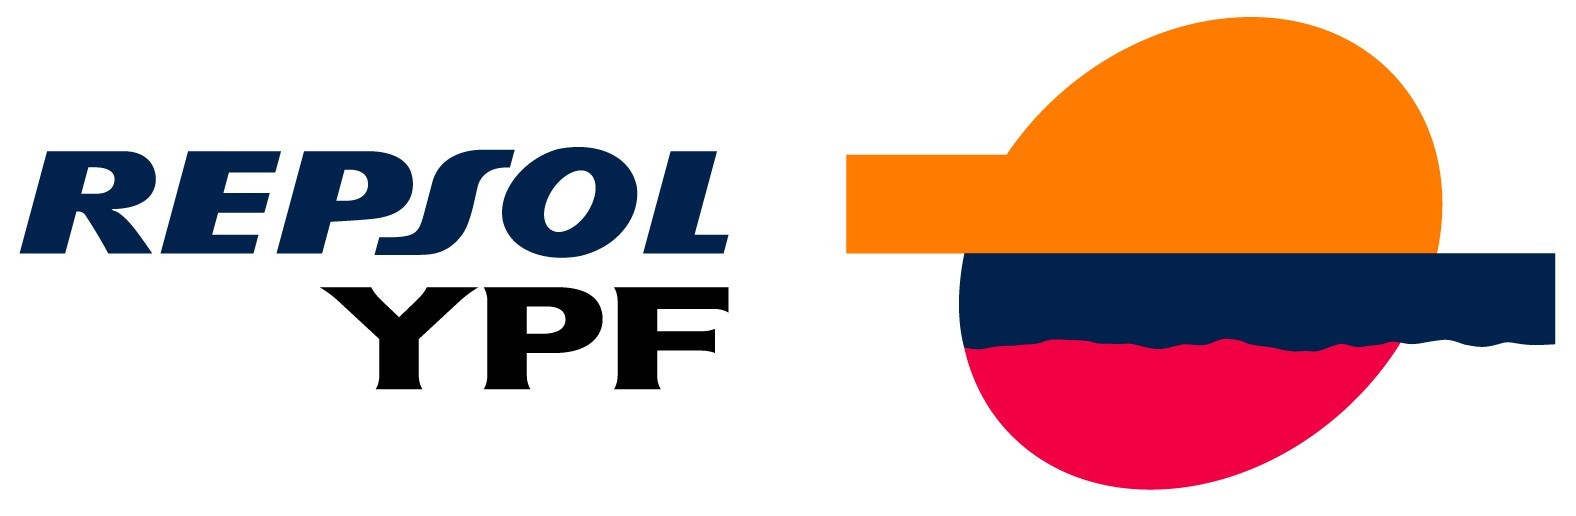 Imagen de la empresa Repsol YPF a la que se le ofrecen los descuentos